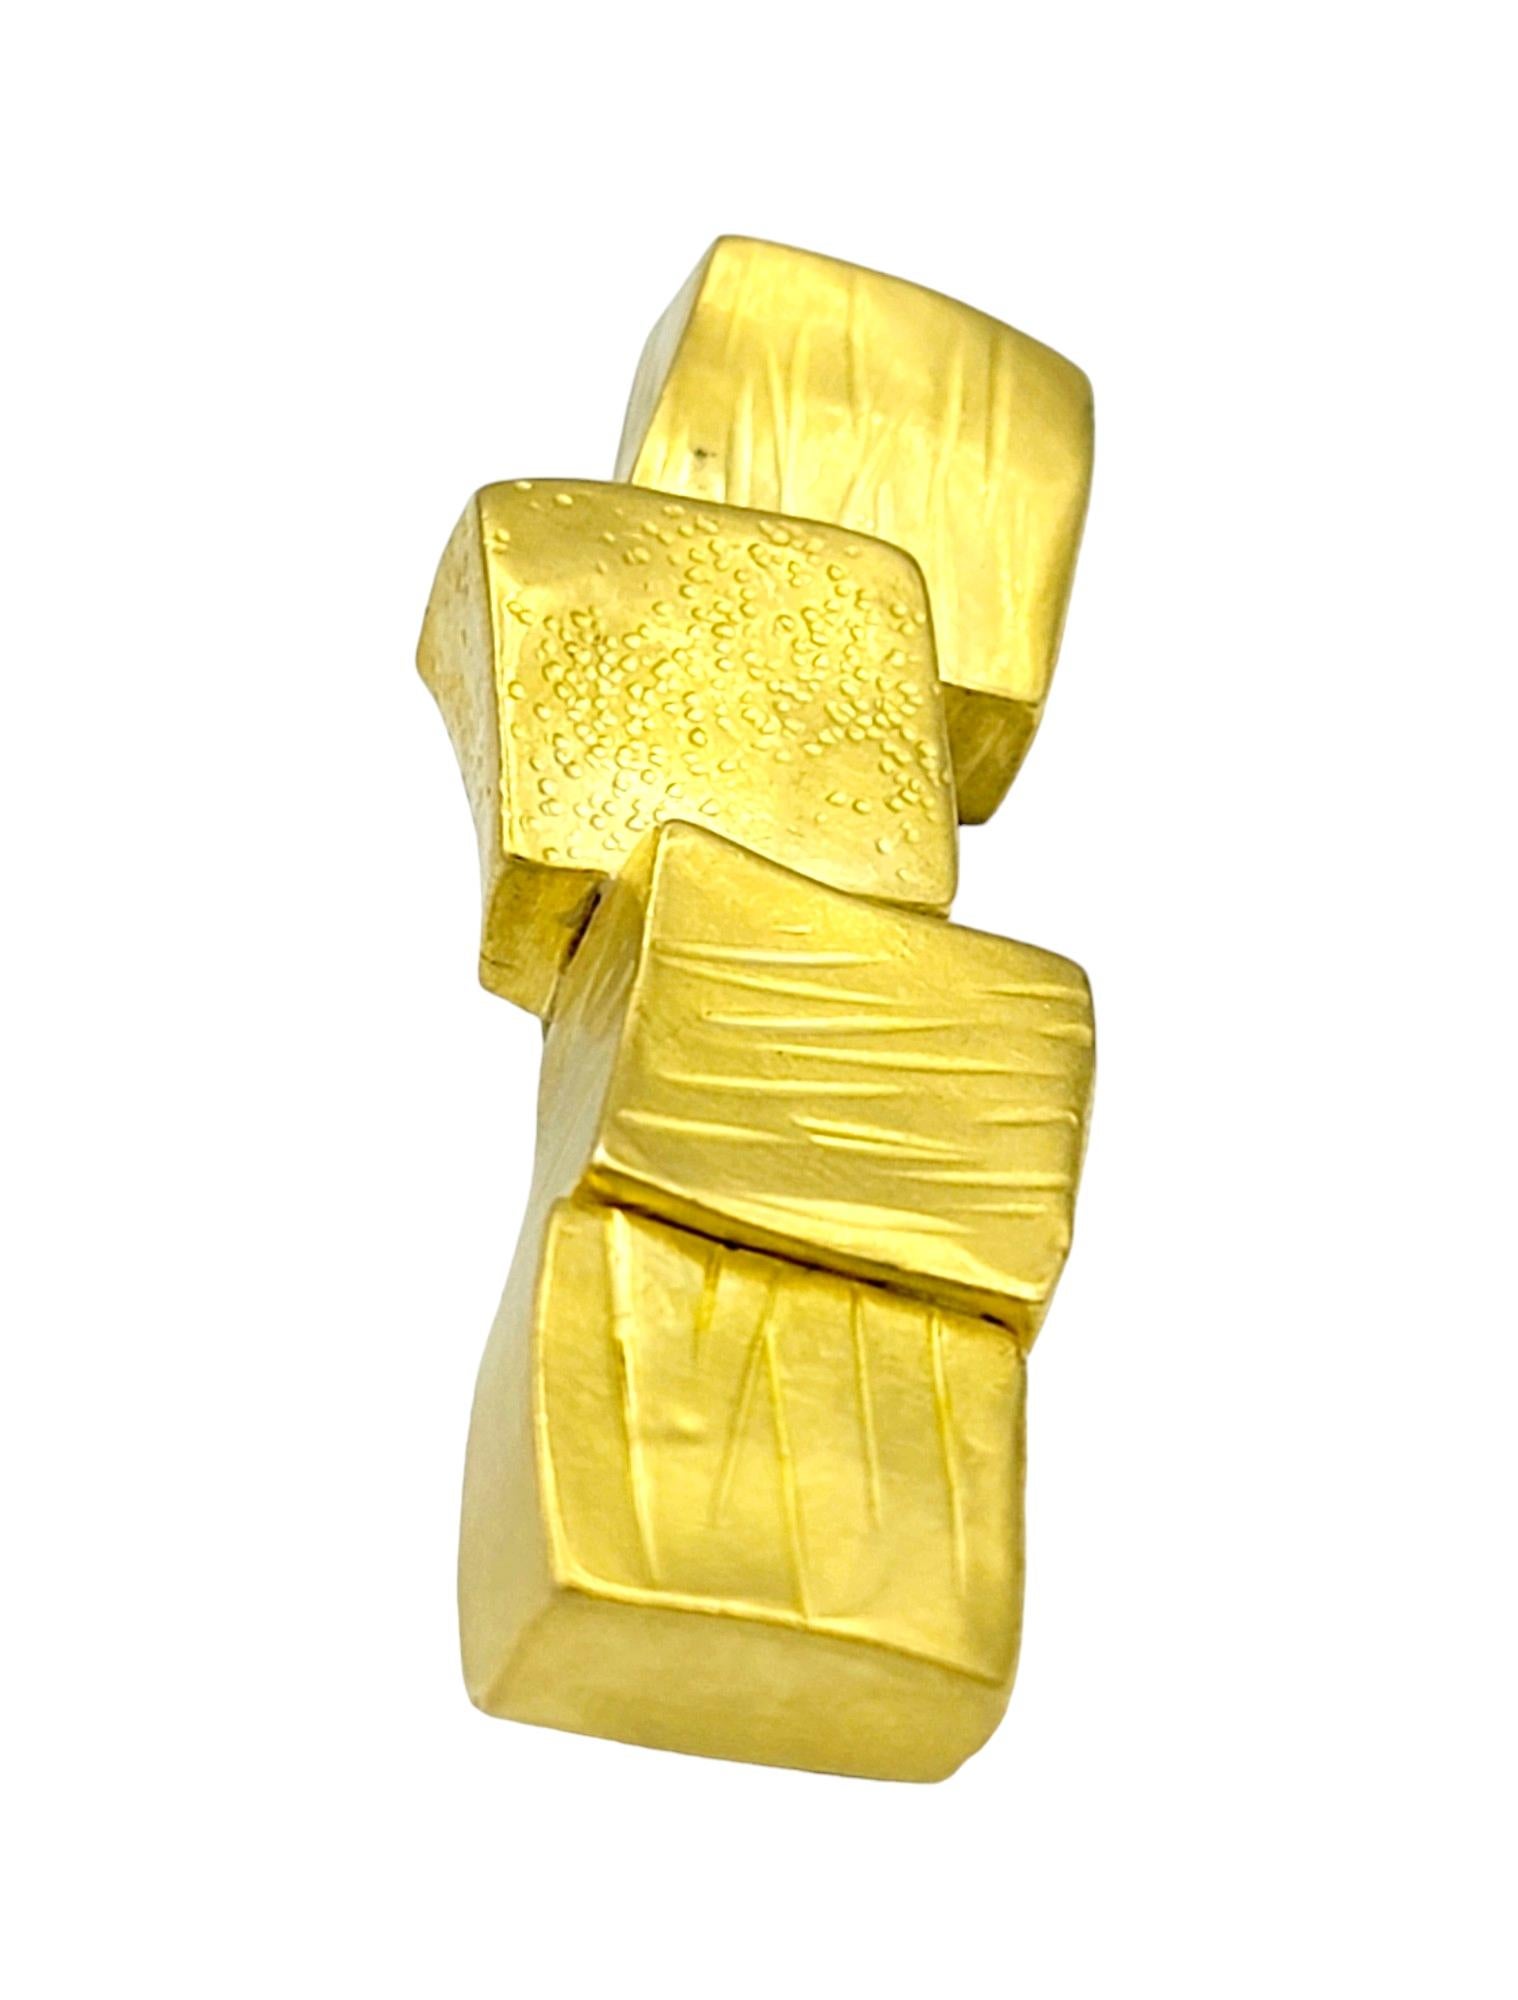 Diese Brosche im geometrischen Stil von Janiye aus strahlendem 22-karätigem Gelbgold ist ein fesselndes Stück tragbarer Kunst. Ihr Design zeichnet sich durch eine Reihe von 4 Goldquadraten aus, die sorgfältig in einer asymmetrischen Linie angeordnet